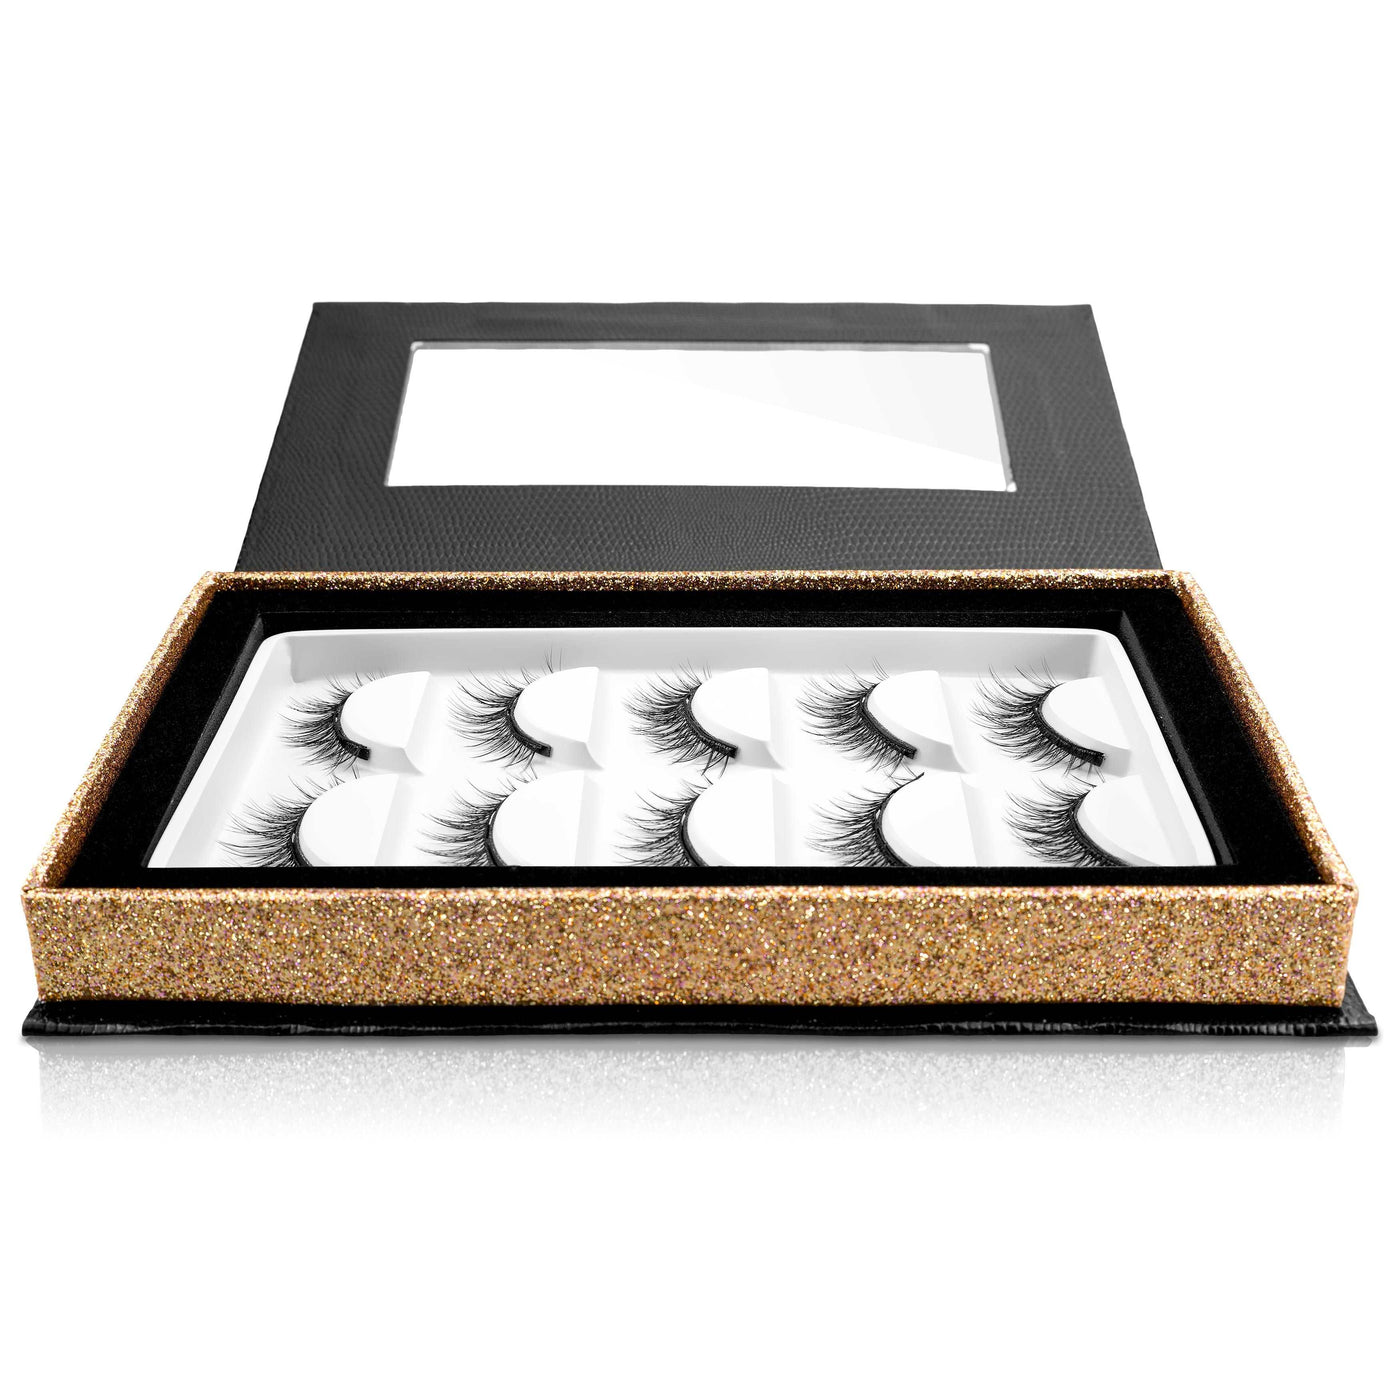 Die Vorratsbox enthält 5 Paar Magnet Wimpern im ELEGANT Look. Die Wimpern bieten einen leichten Tragekomfort, sind wasserfest und mehrfach wiederverwendbar.